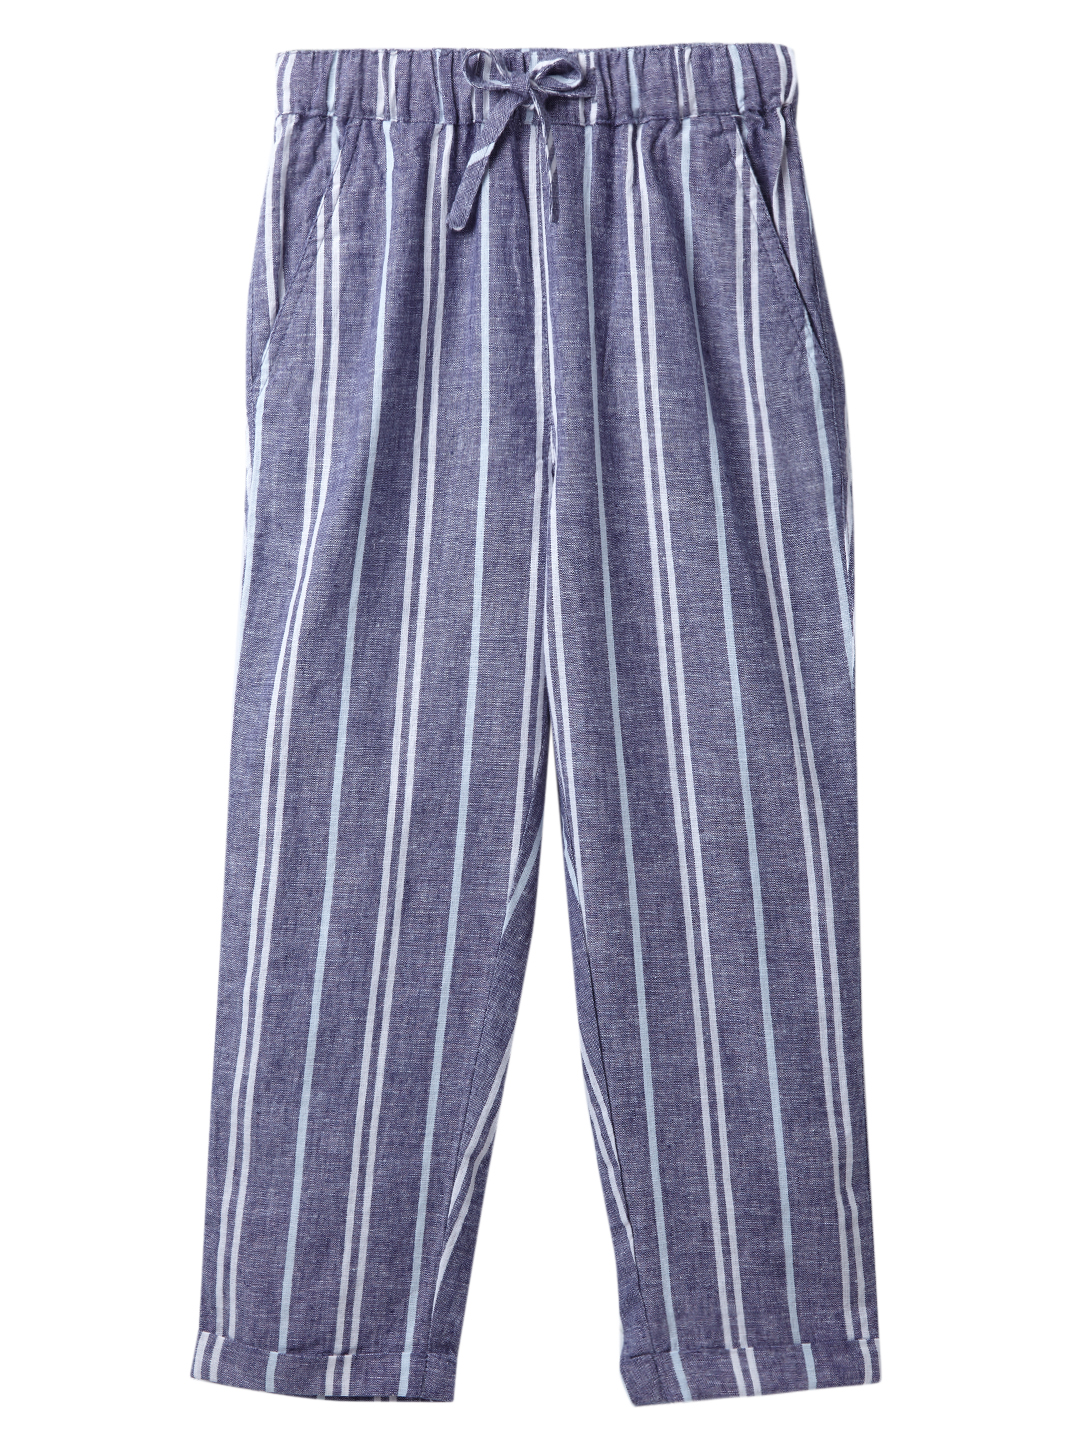 Boys Linen Blend Outerwear Pants - Blue